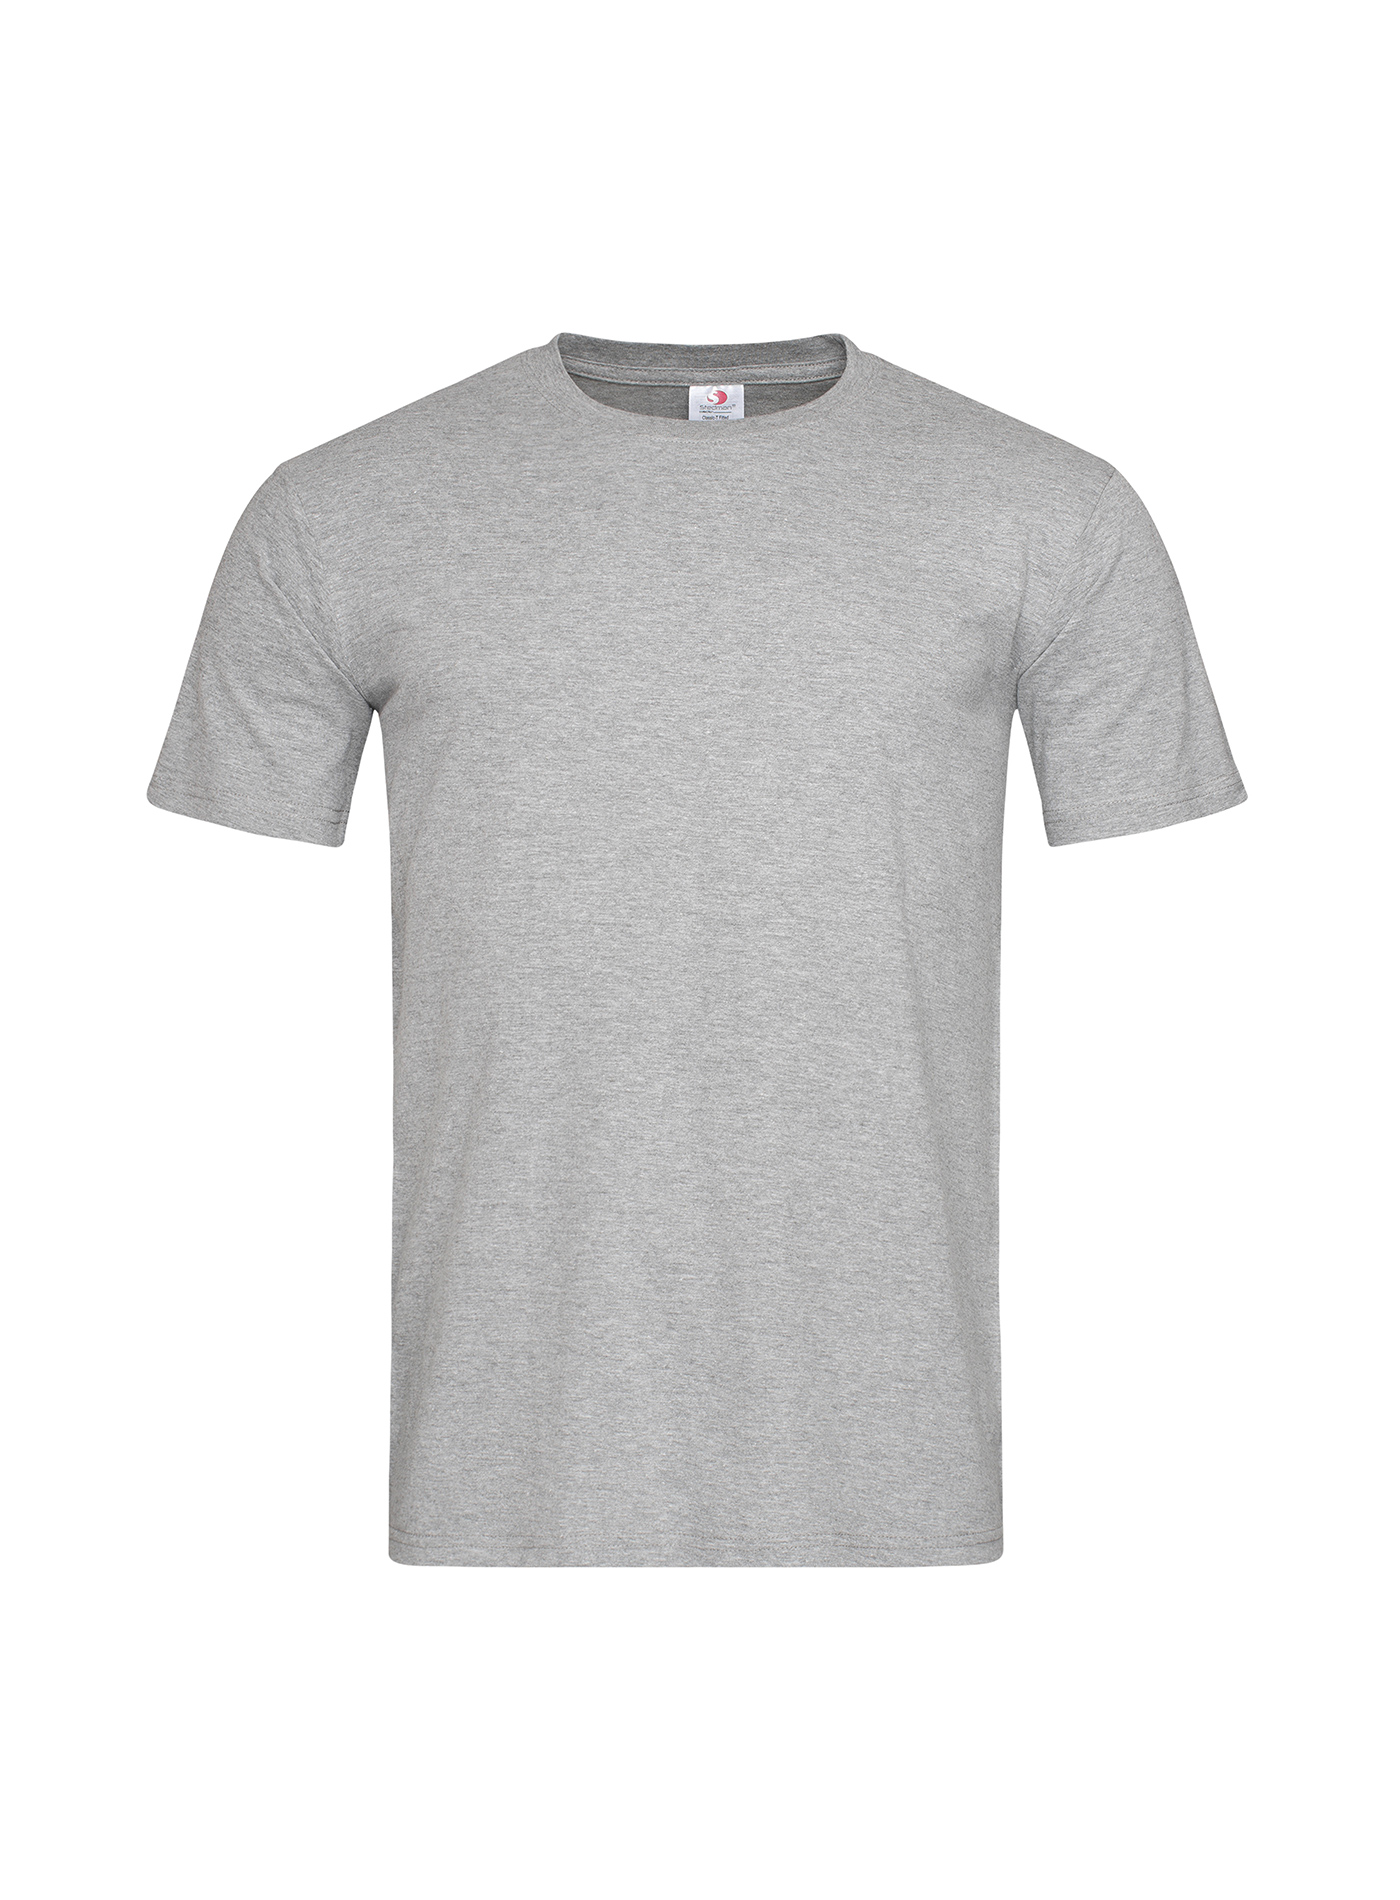 Pánské tričko Stedman Fitted - šedý melír L